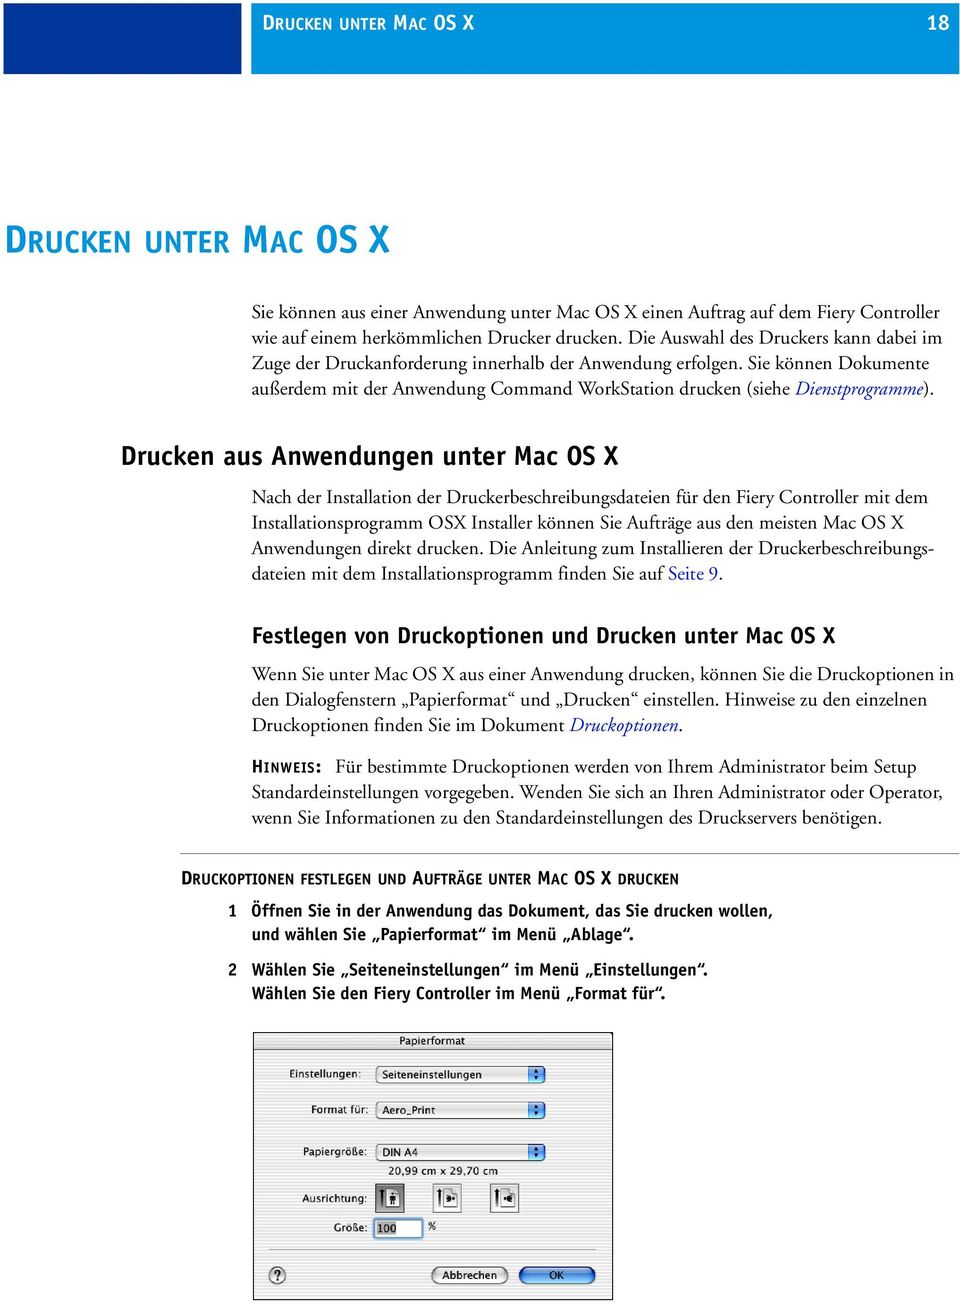 Drucken aus Anwendungen unter Mac OS X Nach der Installation der Druckerbeschreibungsdateien für den Fiery Controller mit dem Installationsprogramm OSX Installer können Sie Aufträge aus den meisten